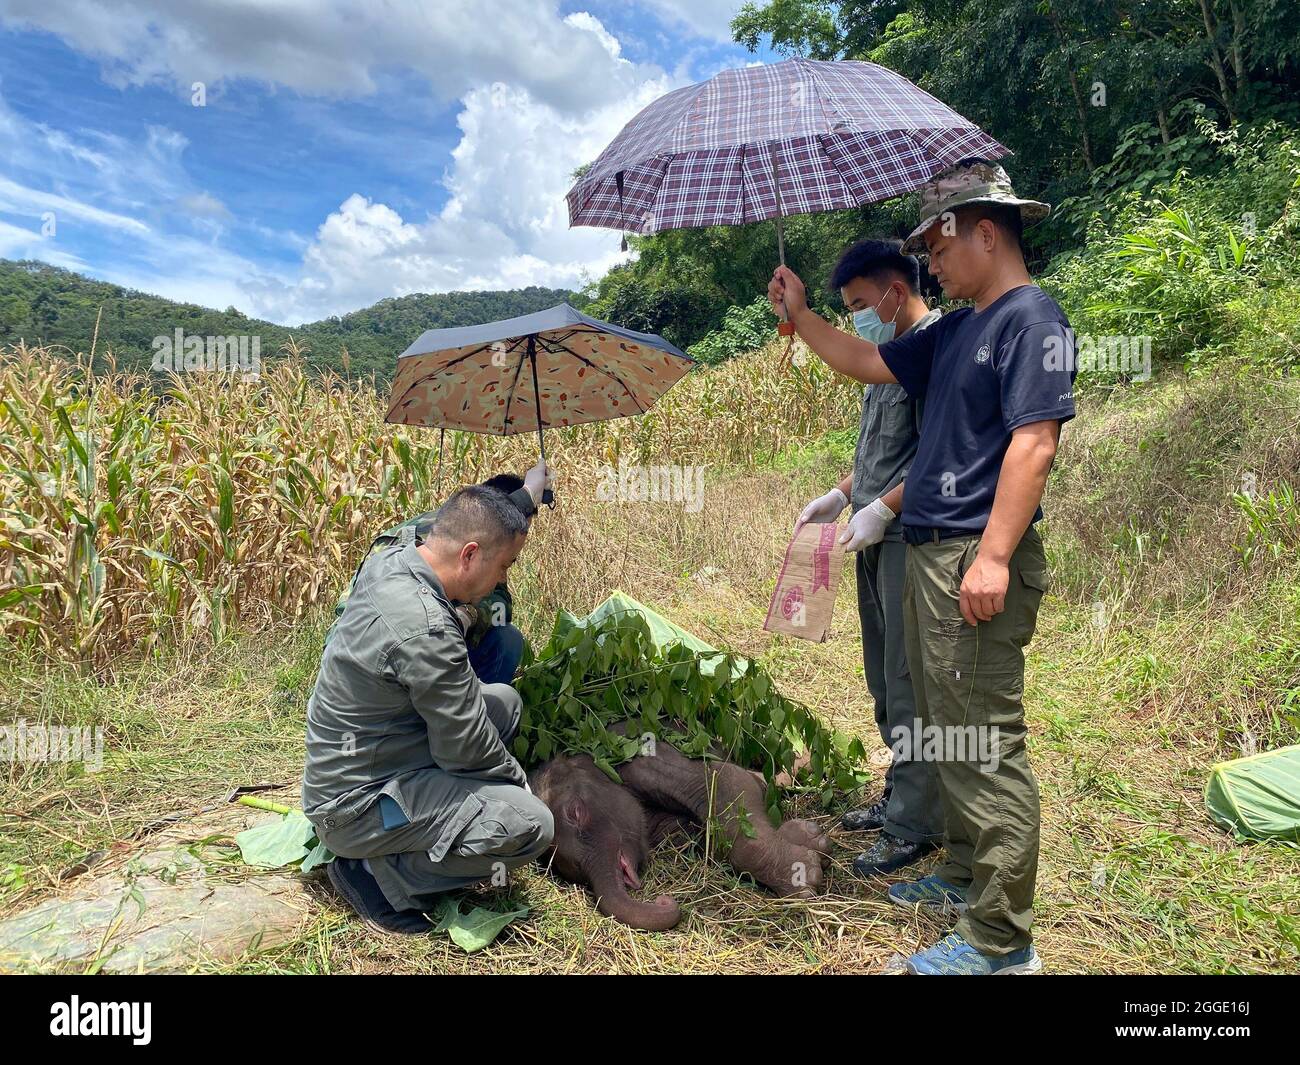 (210831) -- KUNMING, 31 de agosto de 2021 (Xinhua) -- Los reanimadores sostienen paraguas para proteger del sol al bebé elefante enfermo en la prefectura autónoma de Xishuangbanna Dai, provincia de Yunnan, al suroeste de China, 29 de agosto de 2021. Un elefante recién nacido en Xishuangbanna fue abandonado por su rebaño sólo seis días después de su nacimiento debido a enfermedades graves, incluyendo la supuración del cordón umbilical. Las autoridades locales han llevado a cabo un tratamiento de emergencia para el bebé elefante enfermo. El médico que está a cargo de su tratamiento dijo el martes que el bebé elefante se había recuperado de su fiebre, y su enfermedad y mental Foto de stock